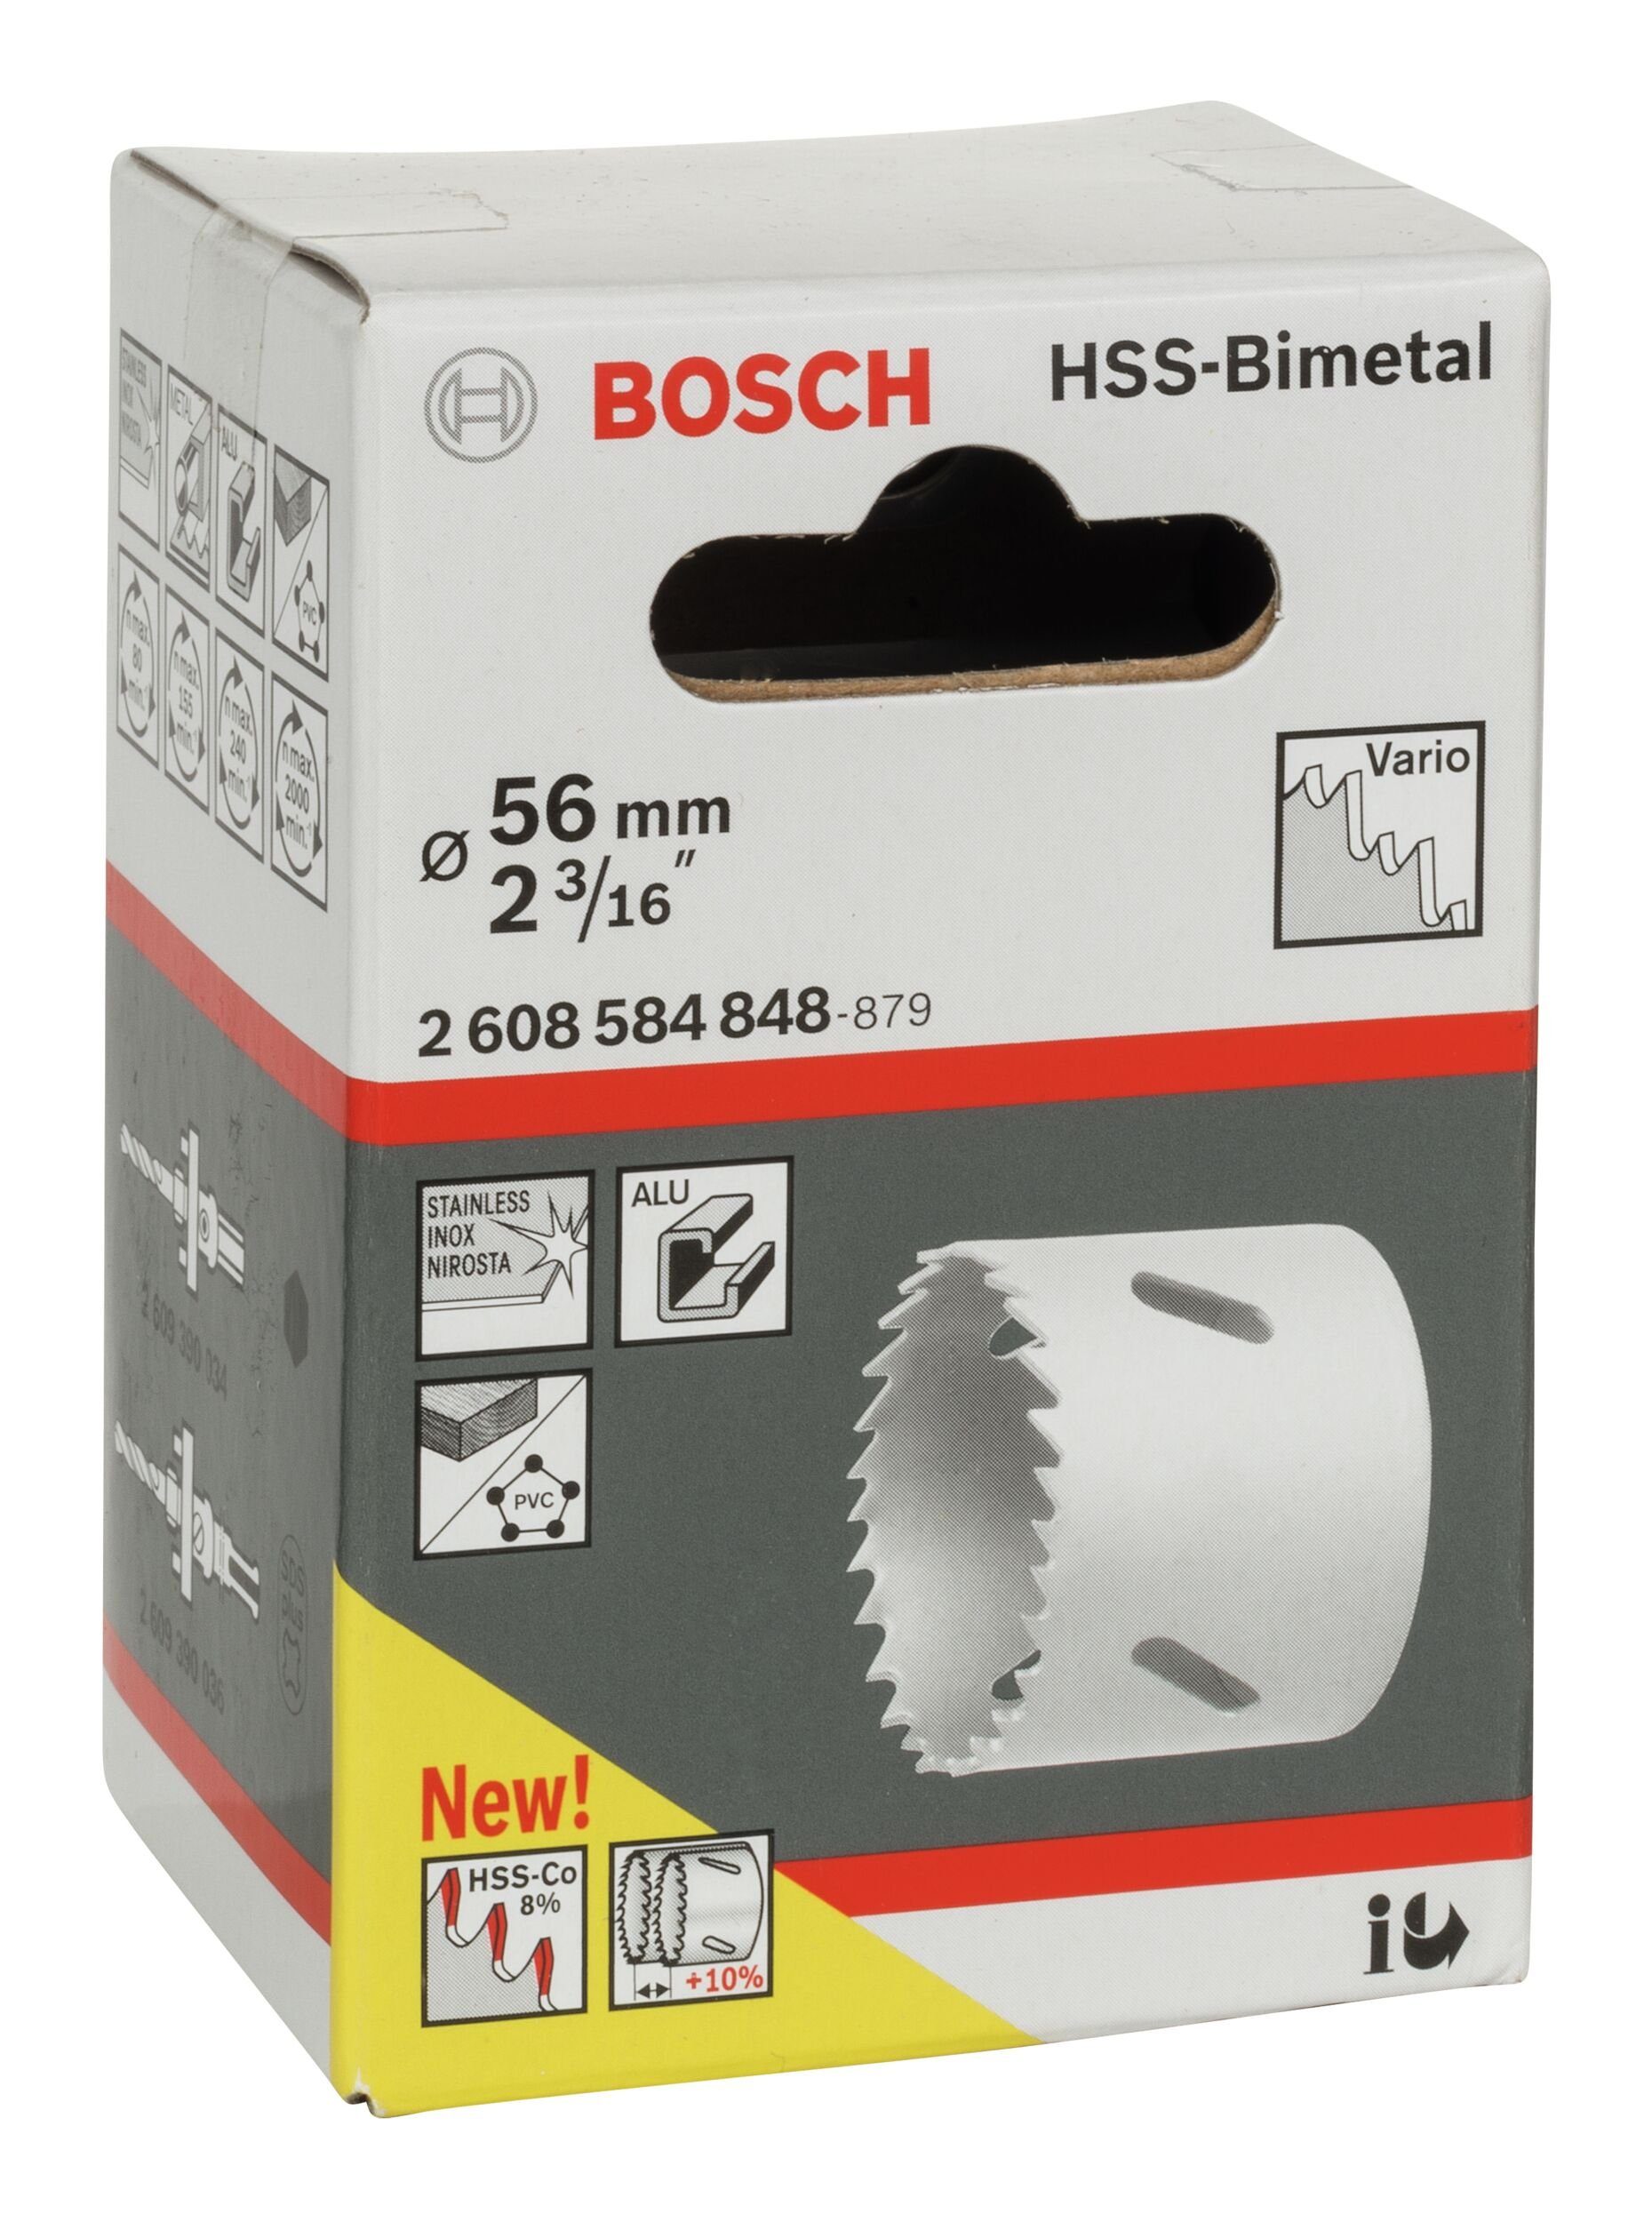 - HSS-Bimetall mm, 3/16" Standardadapter / für BOSCH Ø 56 Lochsäge, 2